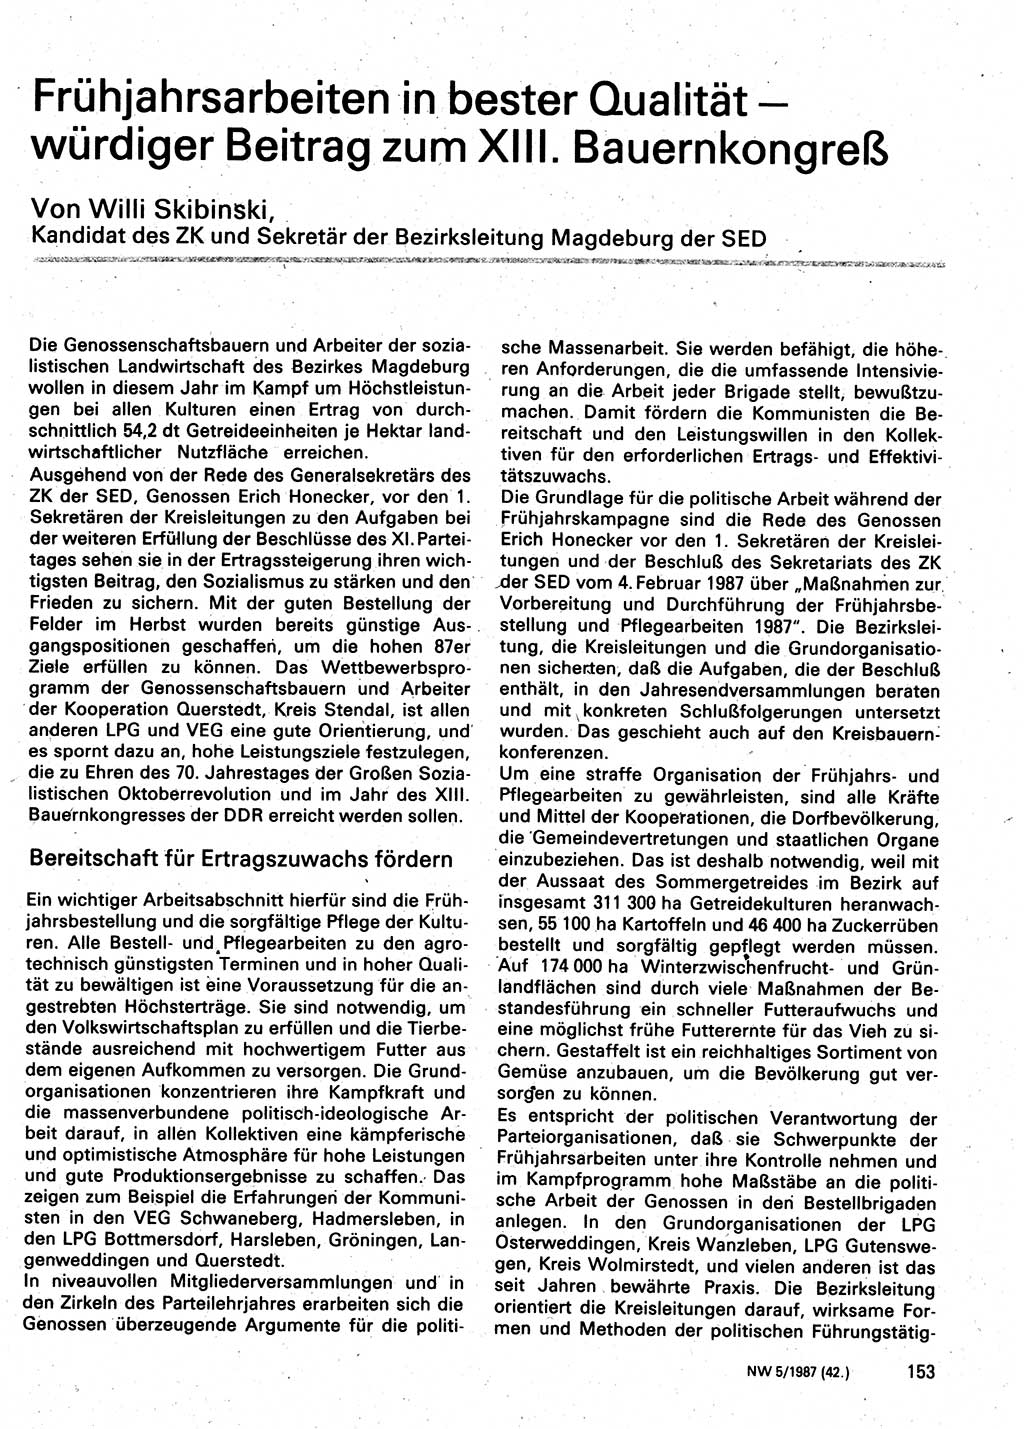 Neuer Weg (NW), Organ des Zentralkomitees (ZK) der SED (Sozialistische Einheitspartei Deutschlands) für Fragen des Parteilebens, 42. Jahrgang [Deutsche Demokratische Republik (DDR)] 1987, Seite 153 (NW ZK SED DDR 1987, S. 153)